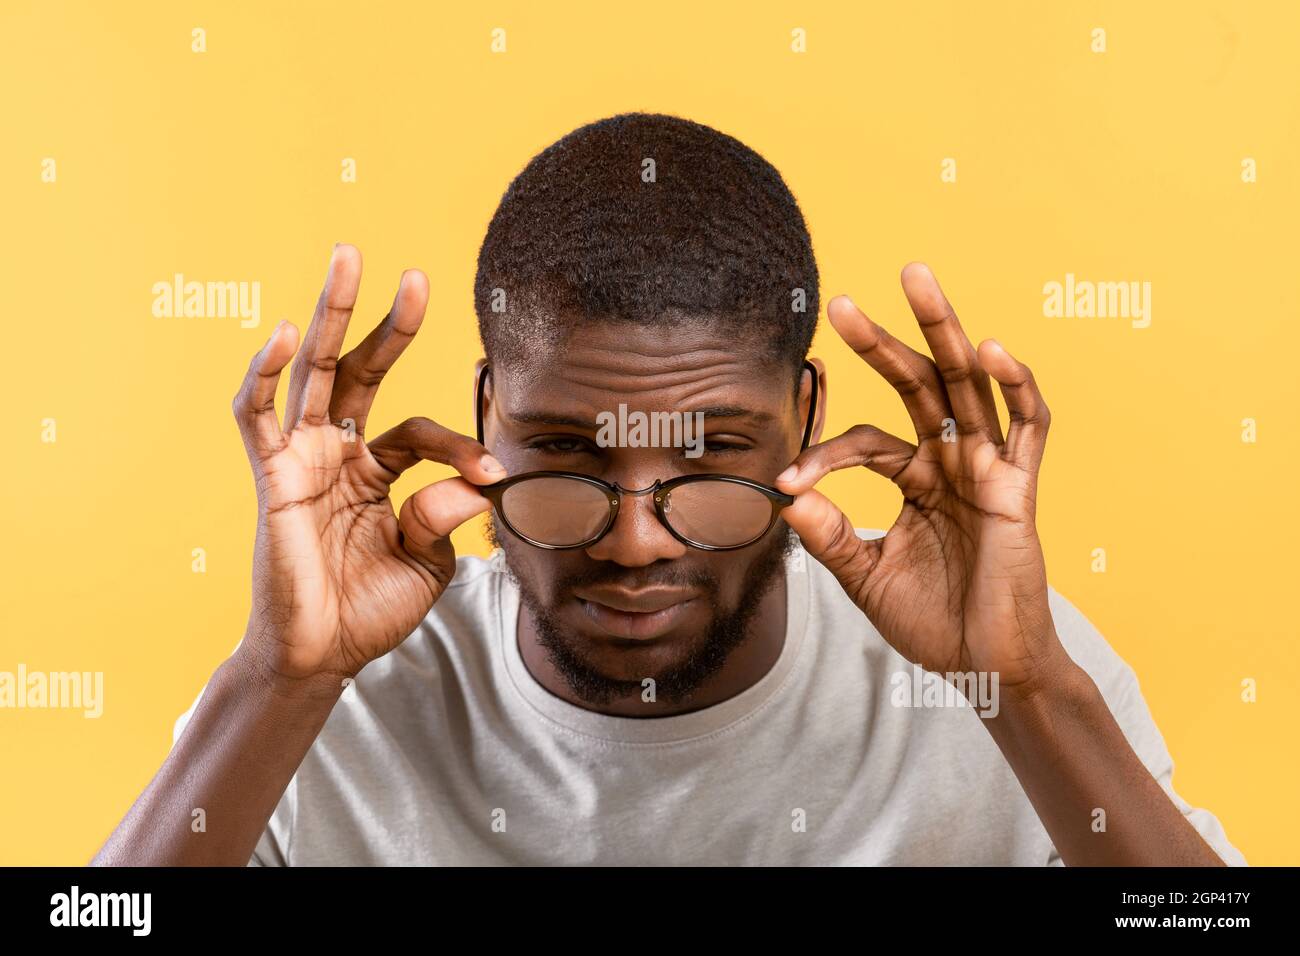 Schlechte Sehkraft. afroamerikanischer Kerl, der Augen zuckt und die Kamera anschaut, die Brille berührt, während er auf gelbem Hintergrund posiert. Vision Probleme Kontra Stockfoto